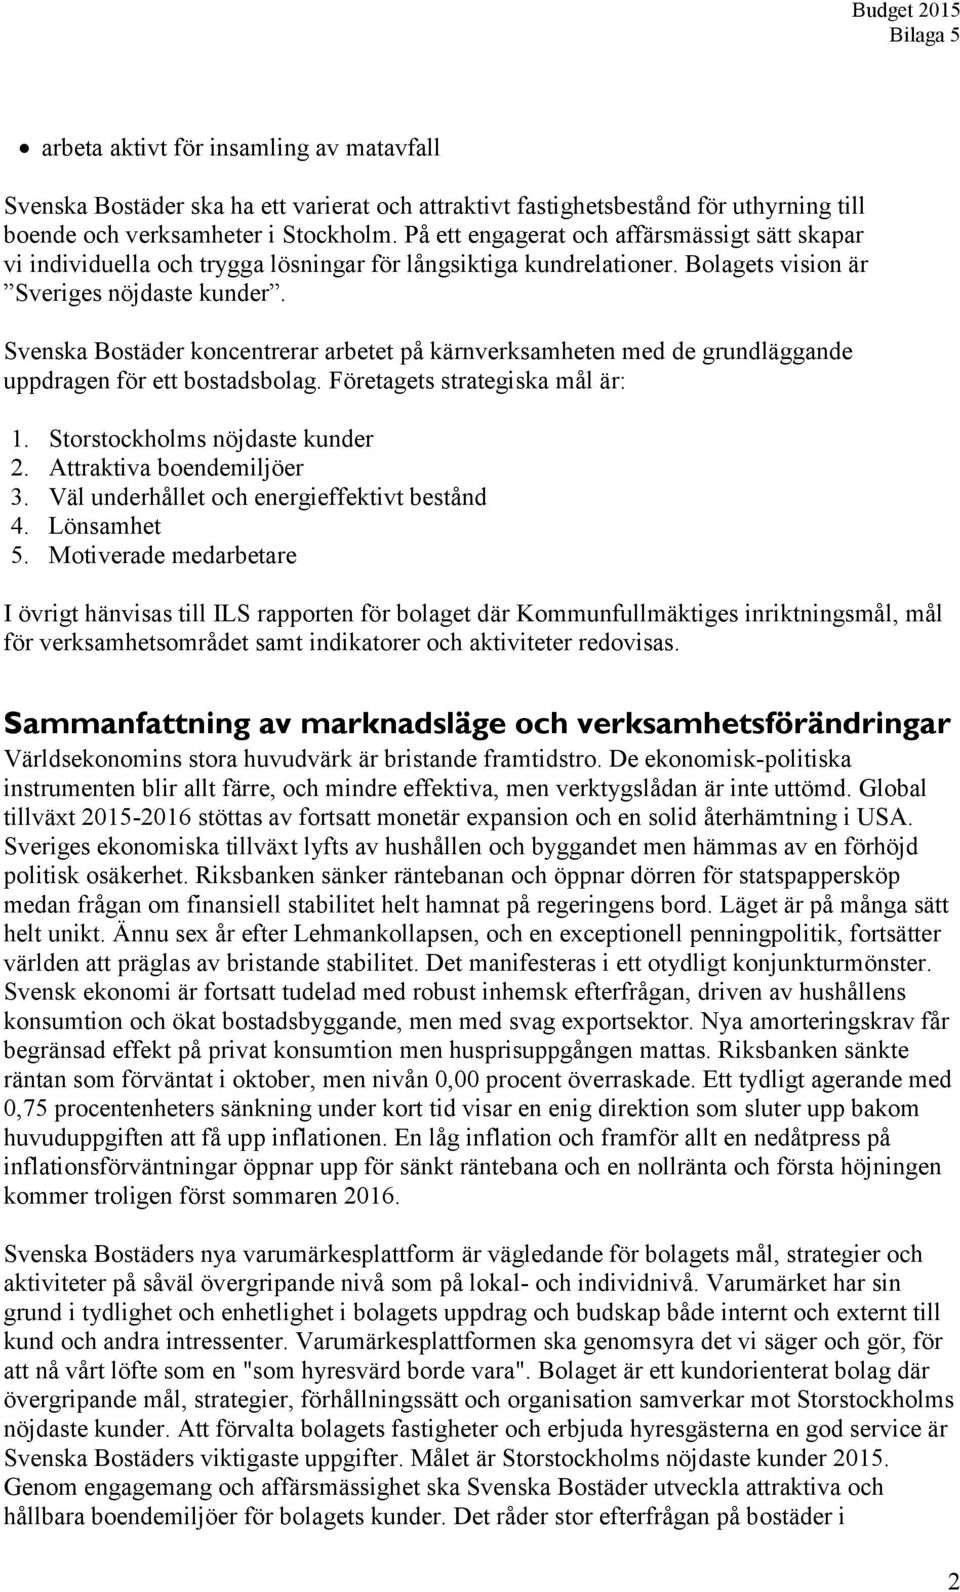 Svenska Bostäder koncentrerar arbetet på kärnverksamheten med de grundläggande uppdragen för ett bostadsbolag. Företagets strategiska mål är: 1. Storstockholms nöjdaste kunder 2.